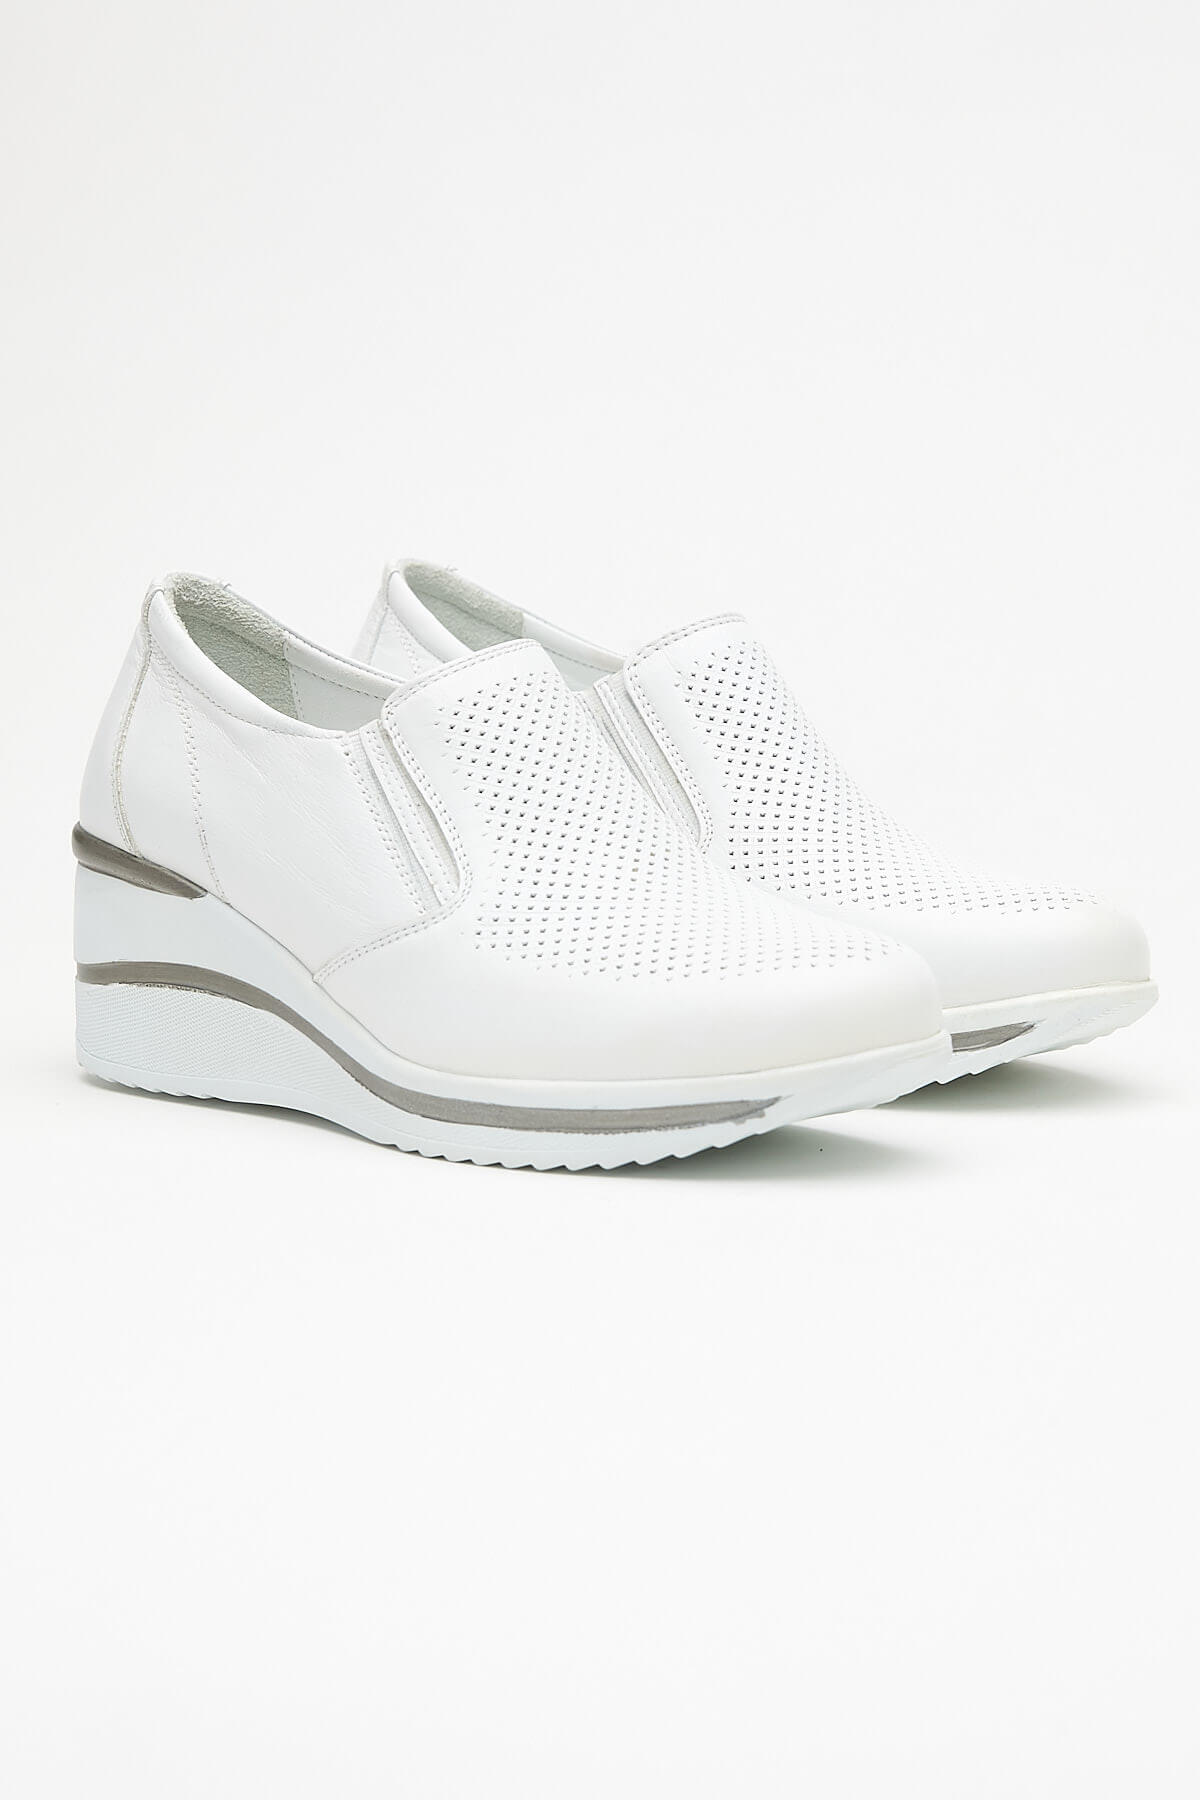 Kadın Dolgu Topuk Deri Sneakers Beyaz 2111501Y